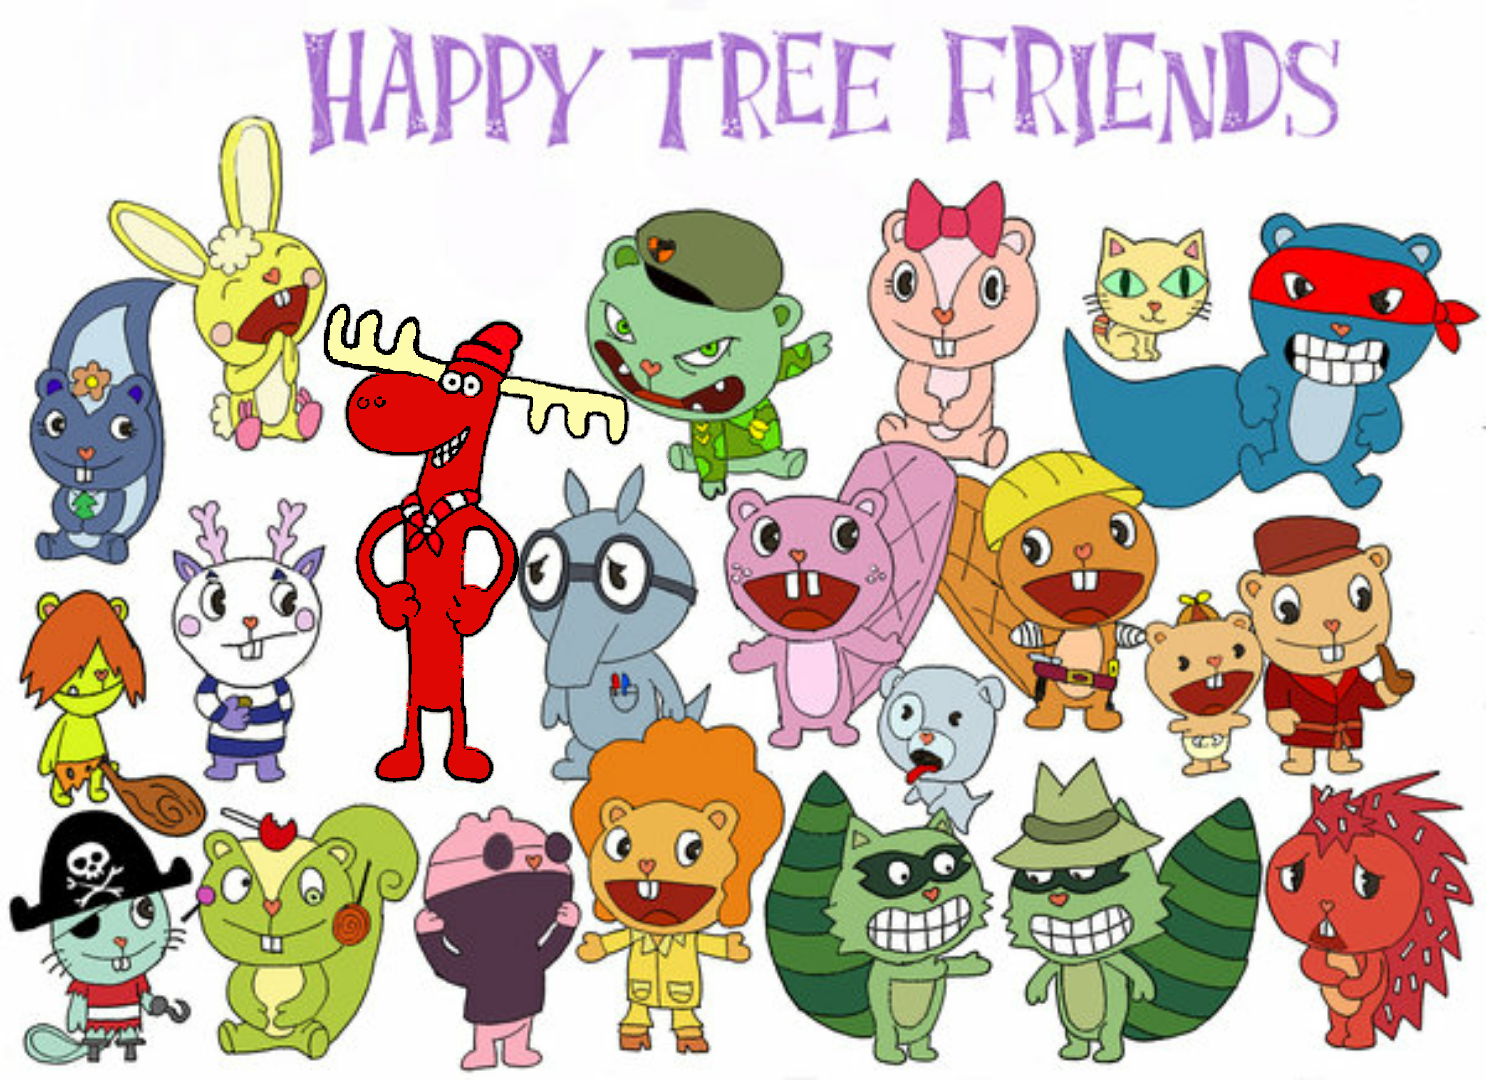 Happy tree friends 2016. Зе Хэппи три френдс. Имена персонажей из Хэппи три френдс. Хеппи три френд персонажи.